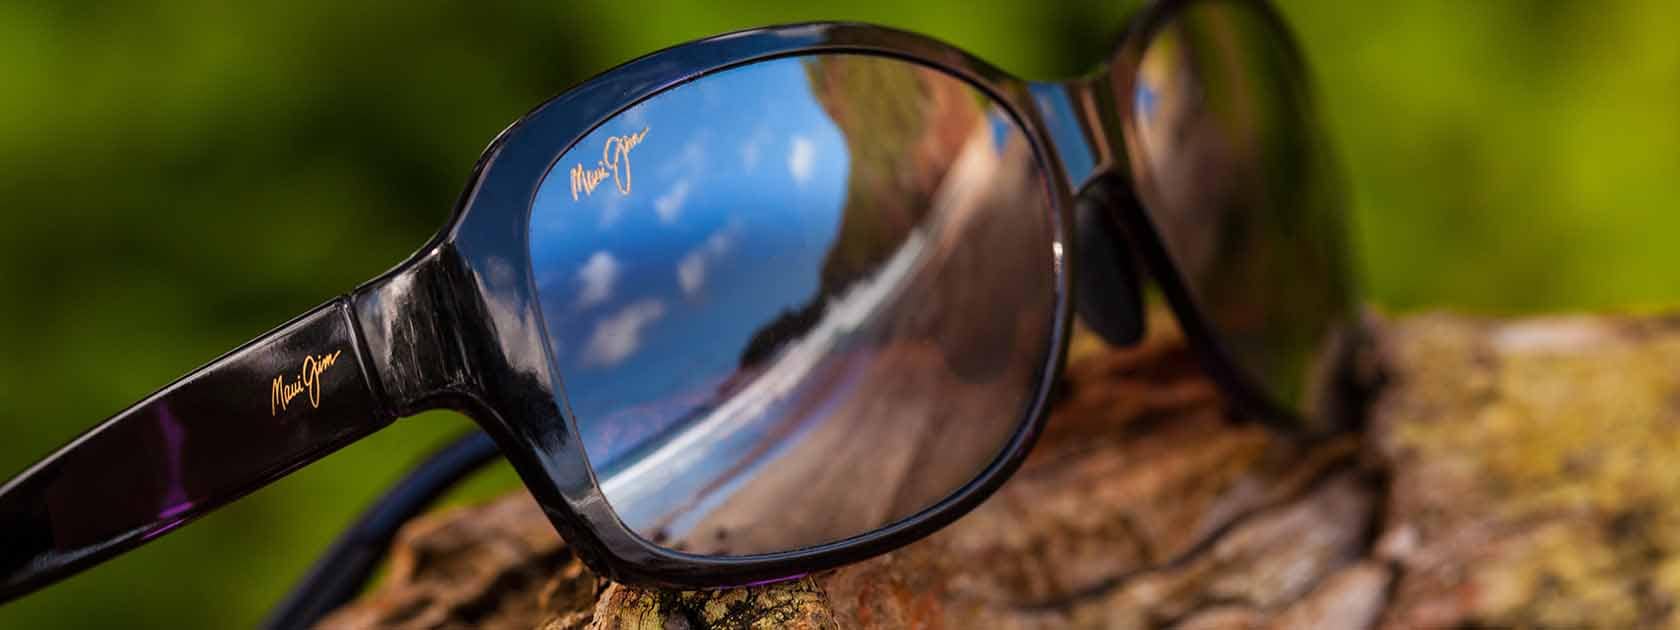 Sonnenbrille mit schwarzer Fassung mit Himmelspiegelung auf den Gläsern auf Holz